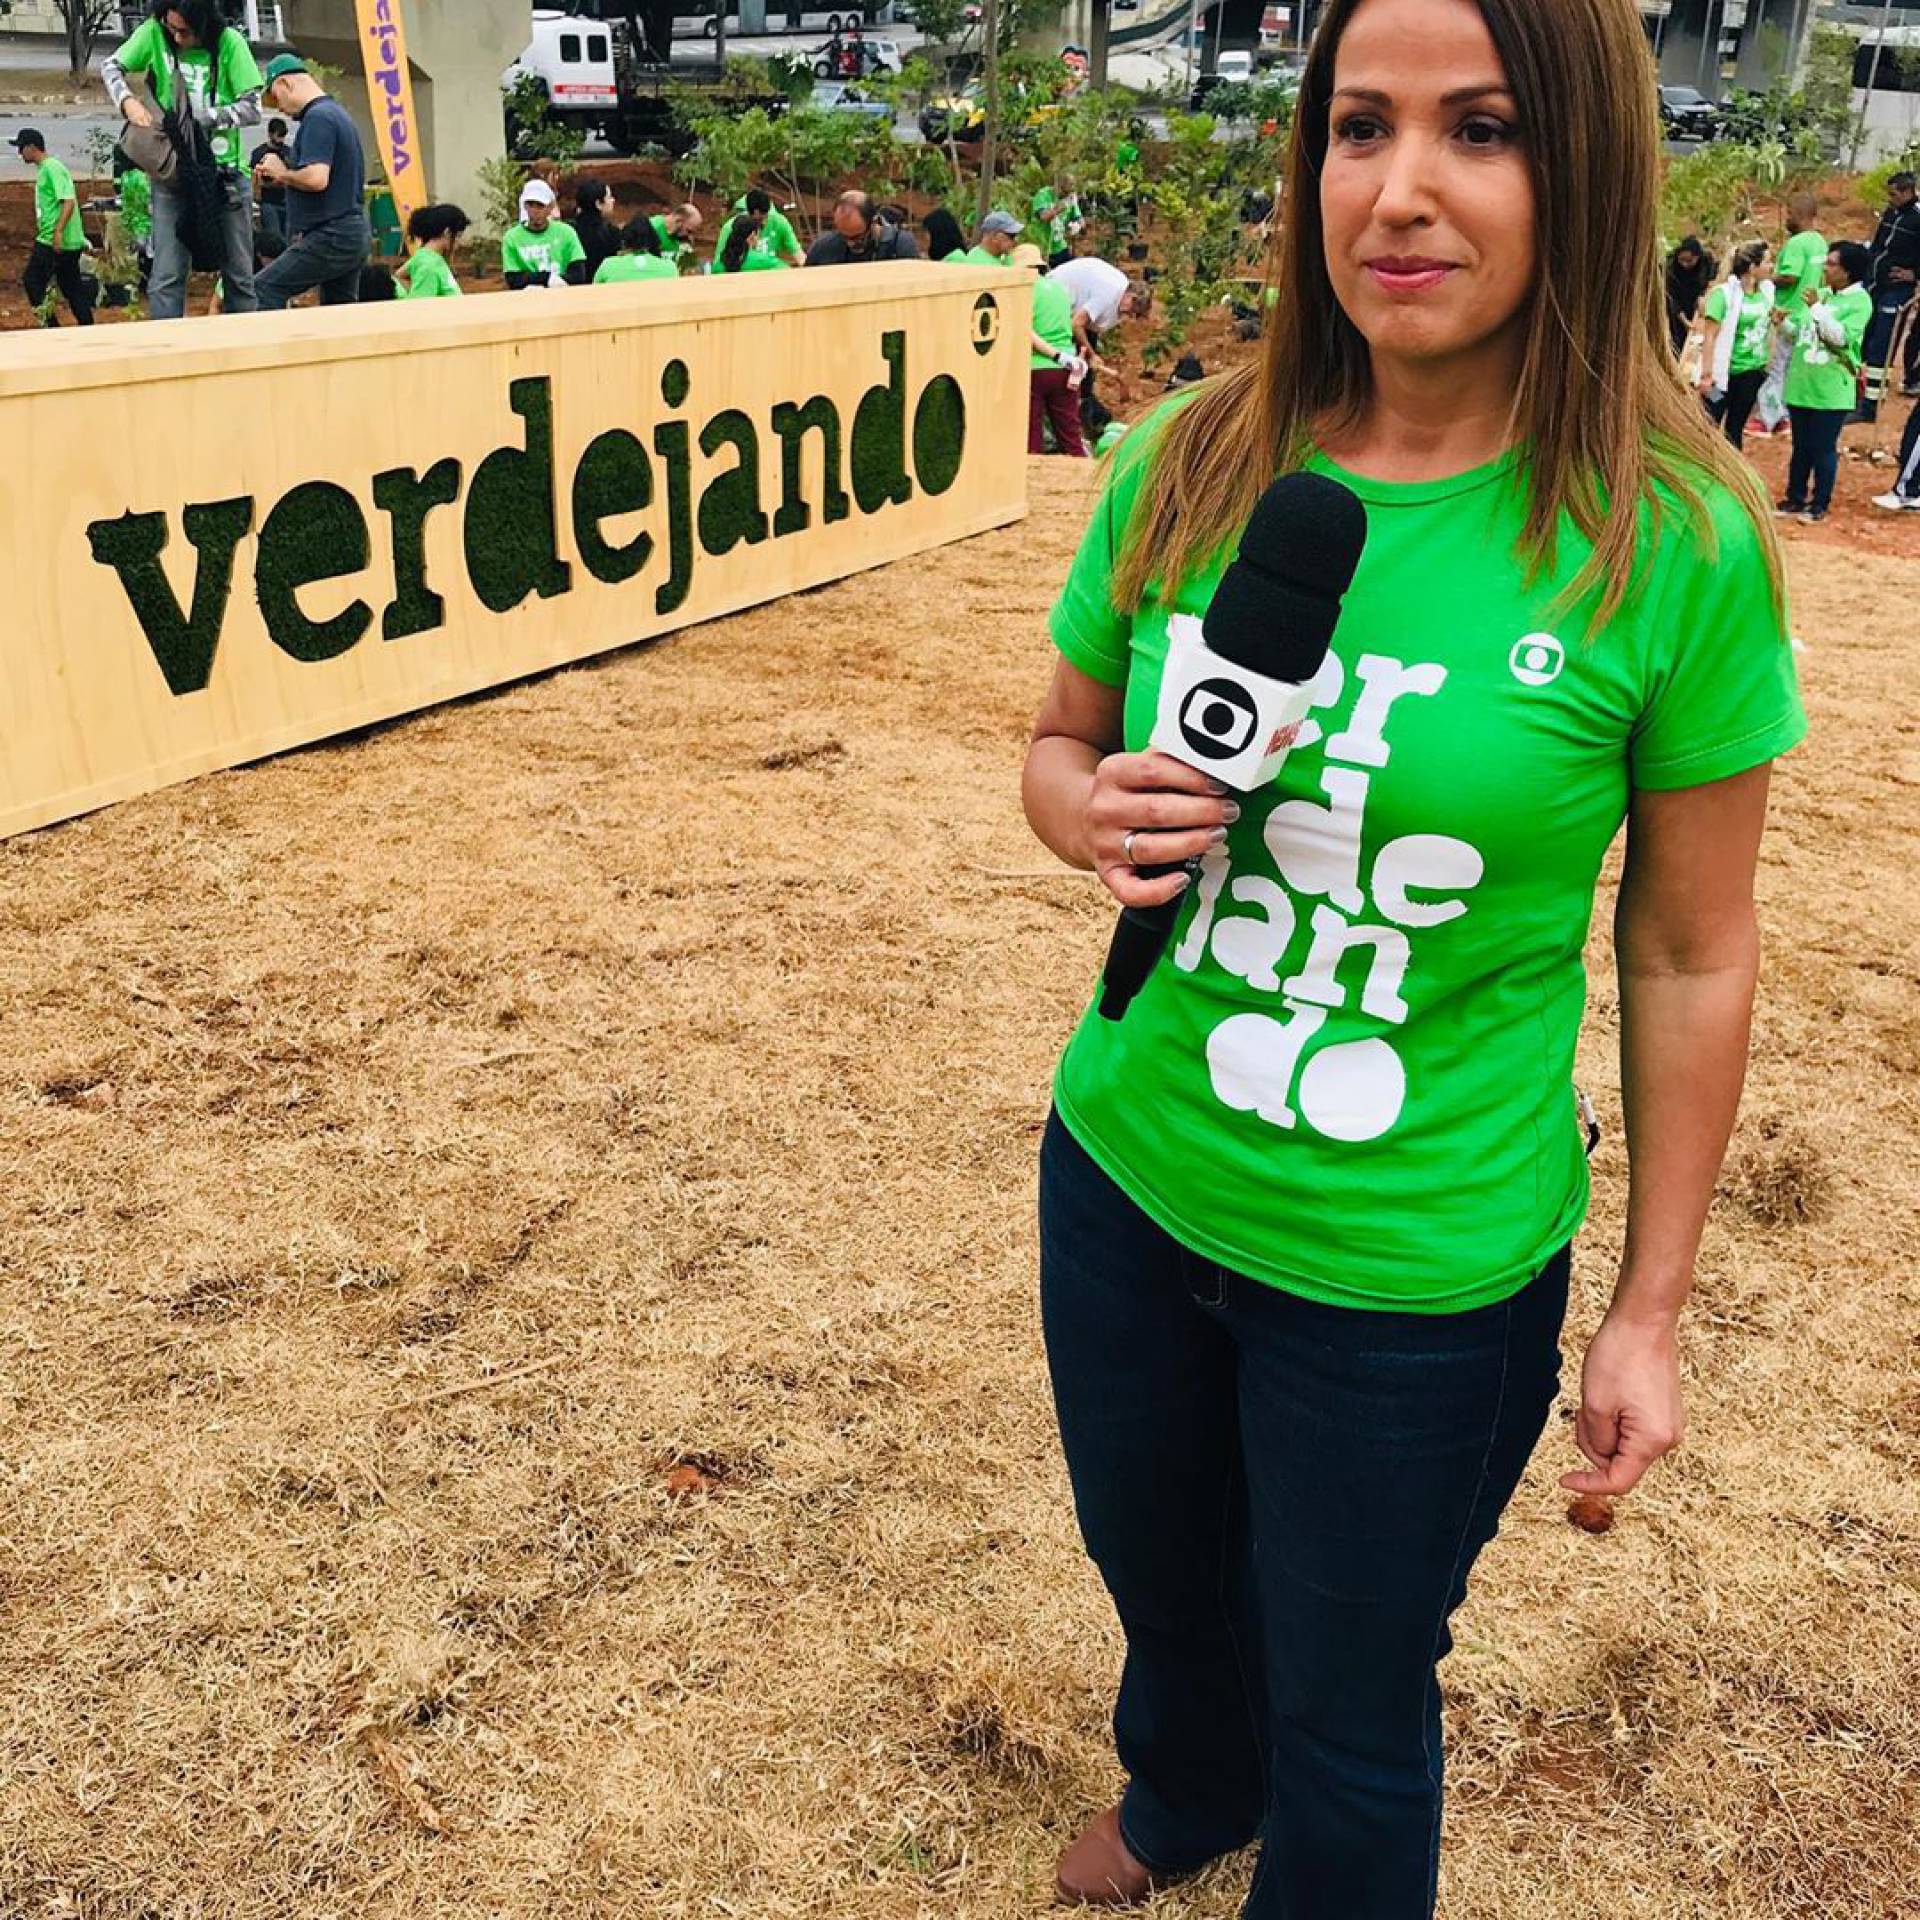 Ananda Apple, repórter da Globo, revela idade e surpreende público